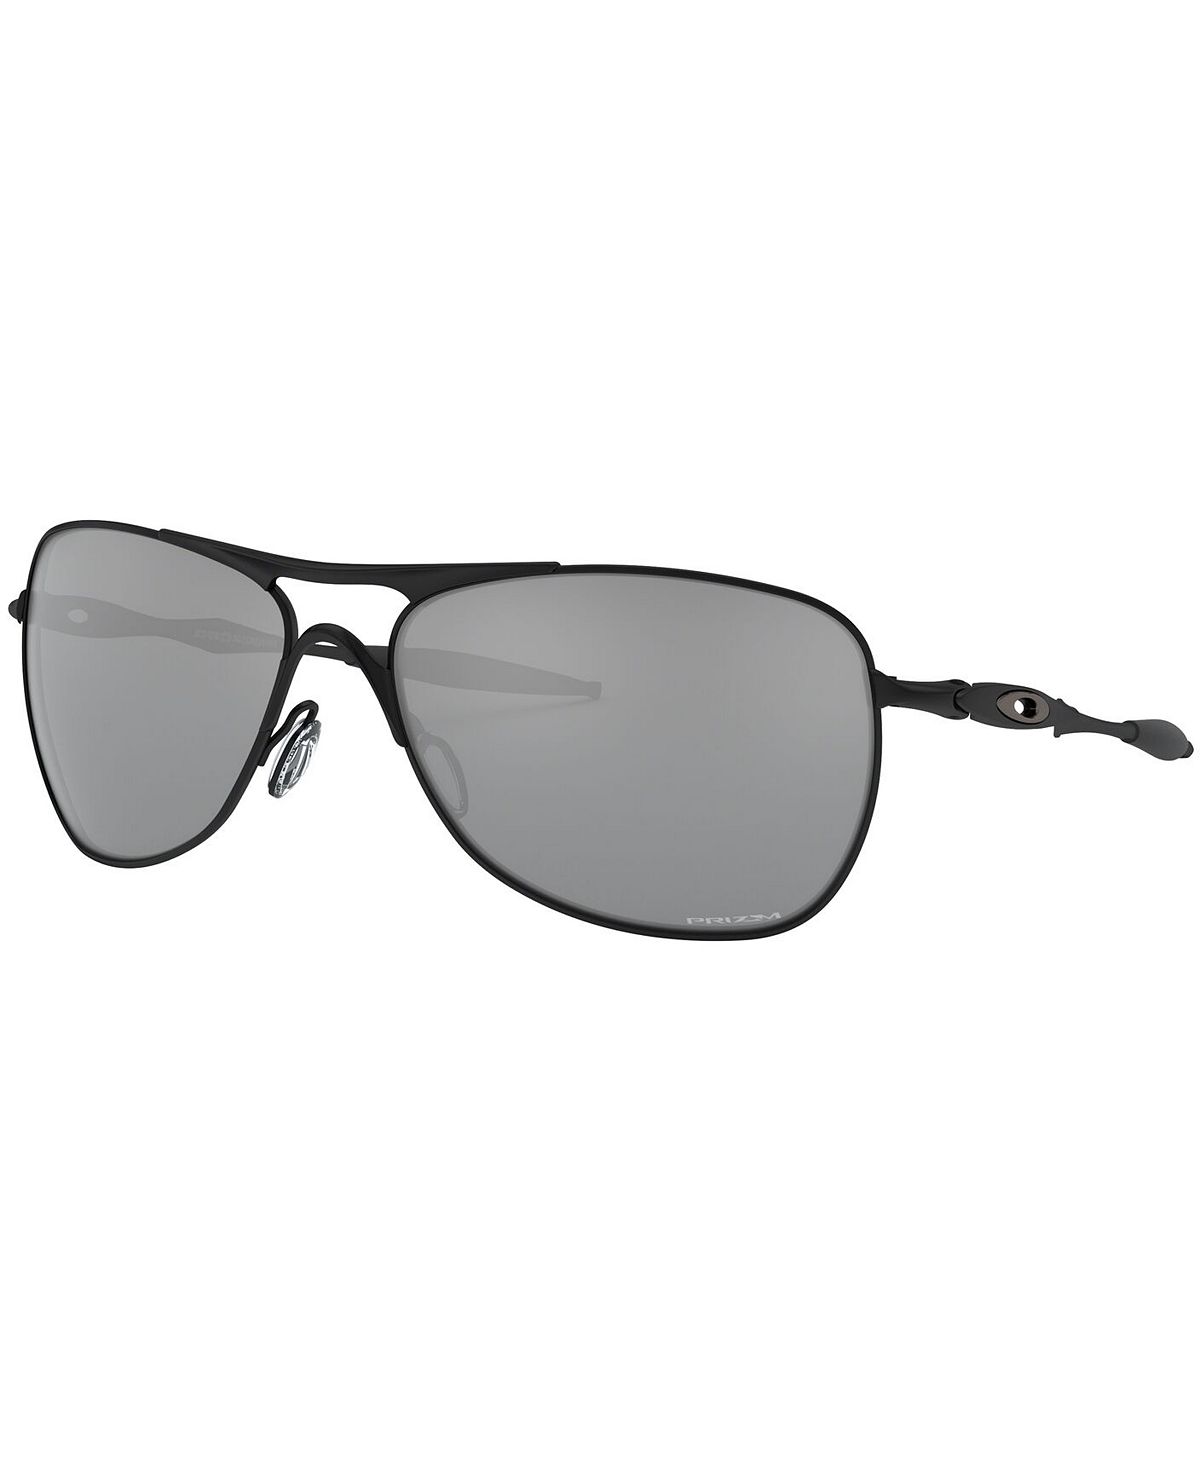 Солнцезащитные очки CROSSHAIR, OO4060 Oakley